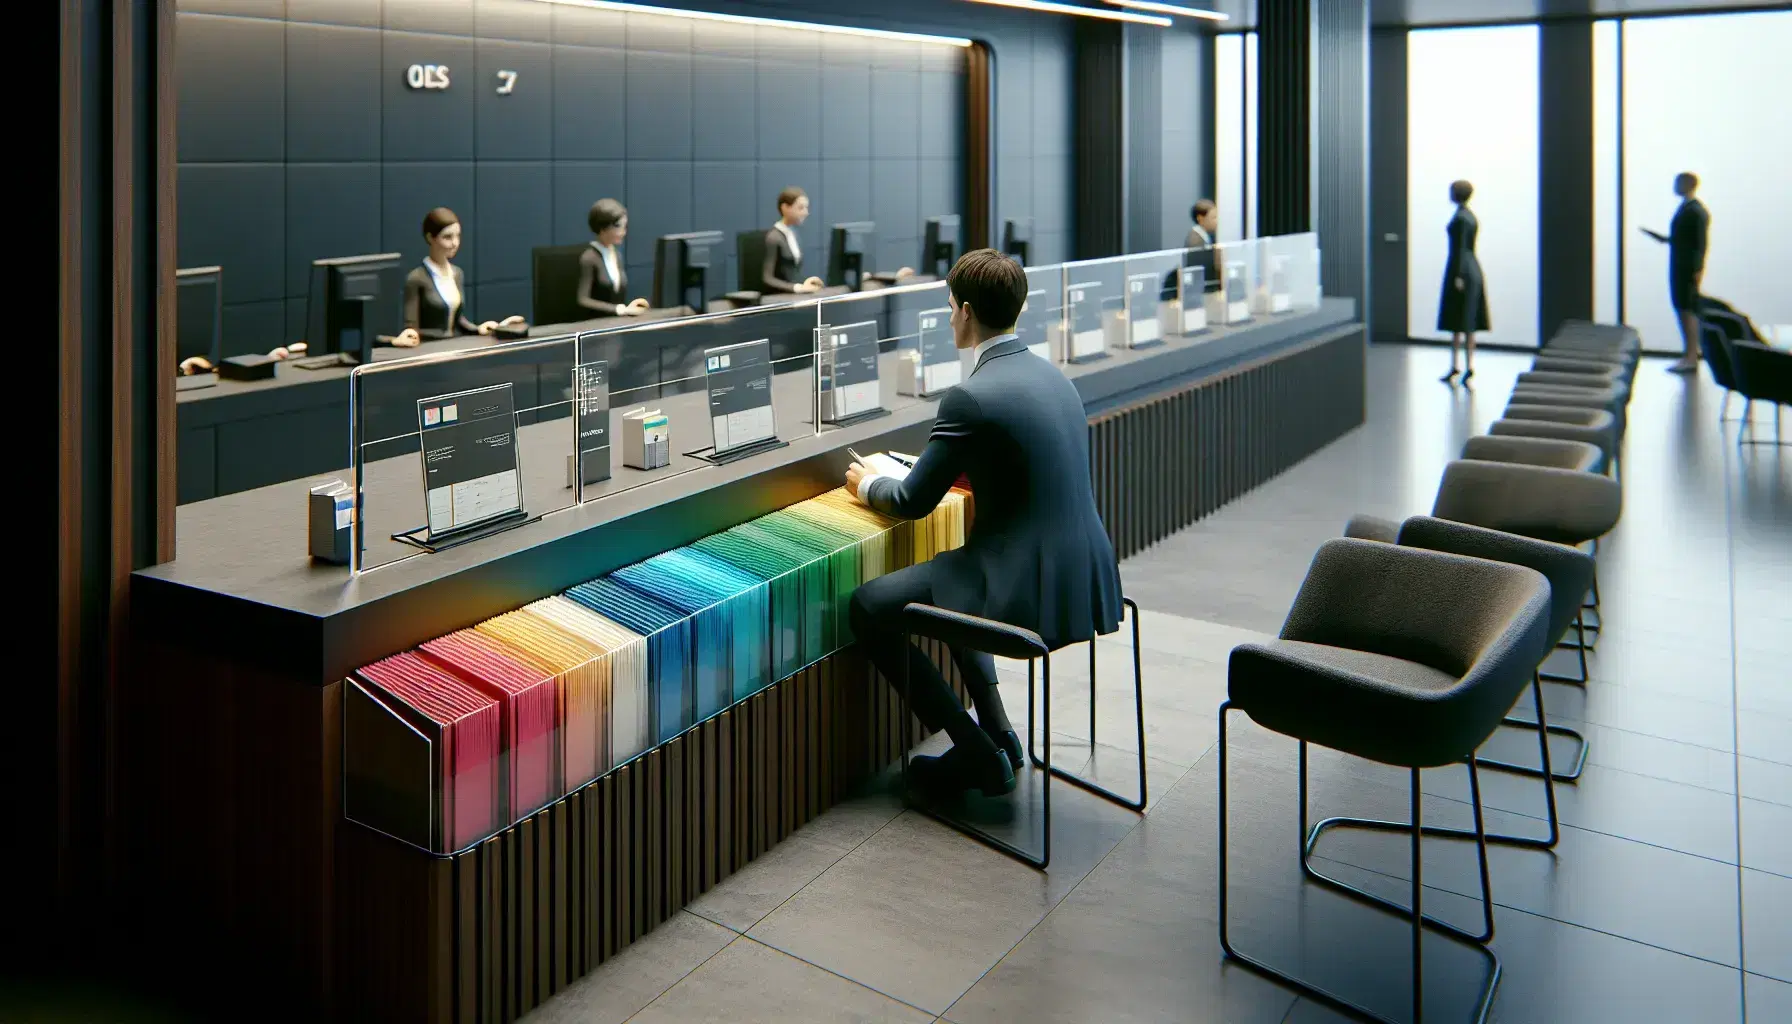 Escena de sucursal bancaria con folletos de colores en soporte acrílico, empleado en traje azul y ventanillas de atención al cliente.